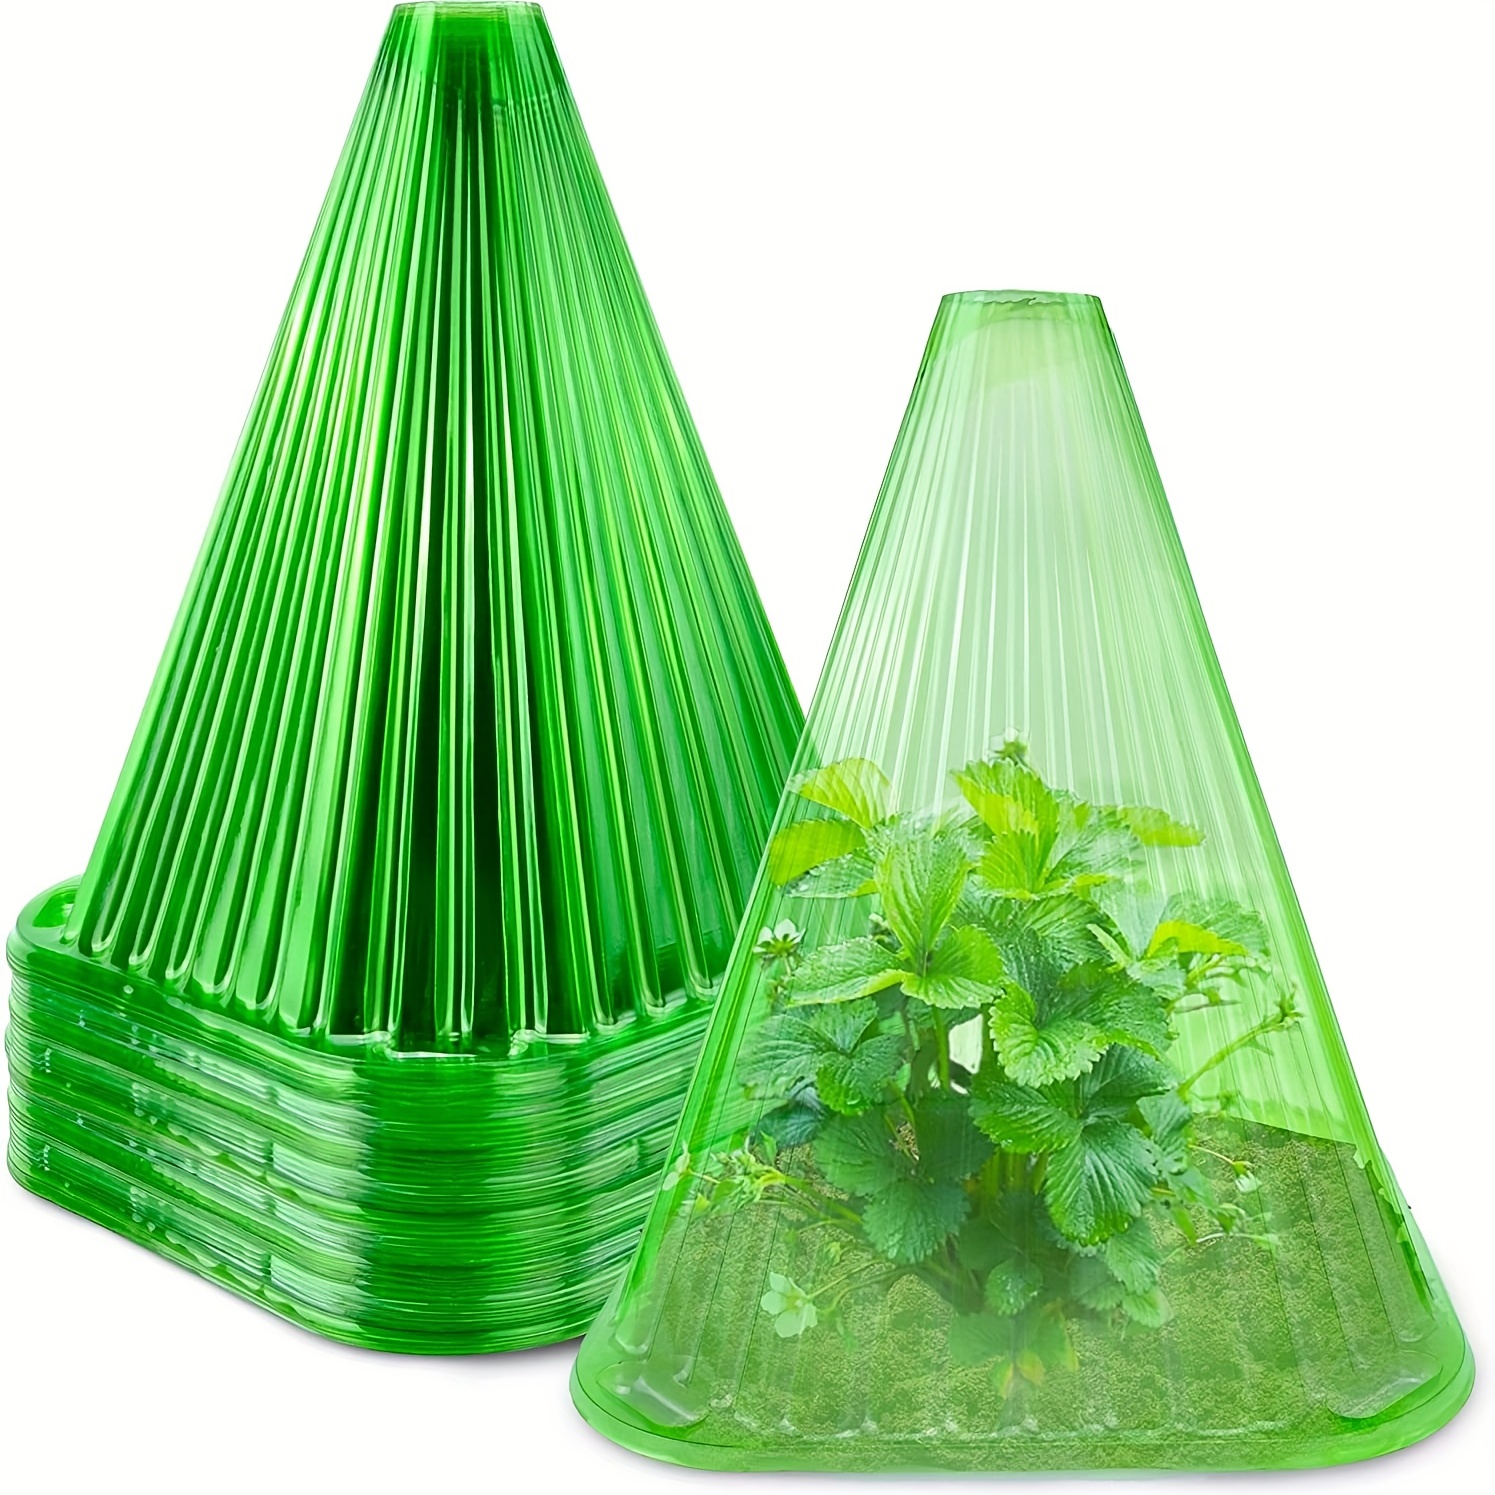 1 Pack, Couverture Anti-gel Pour Plantes D'Hiver Épaissie, Type De Cordon  De Serrage Pour Couverture Anti-gel D'Arbres Et De Fleurs Agricoles, Protect